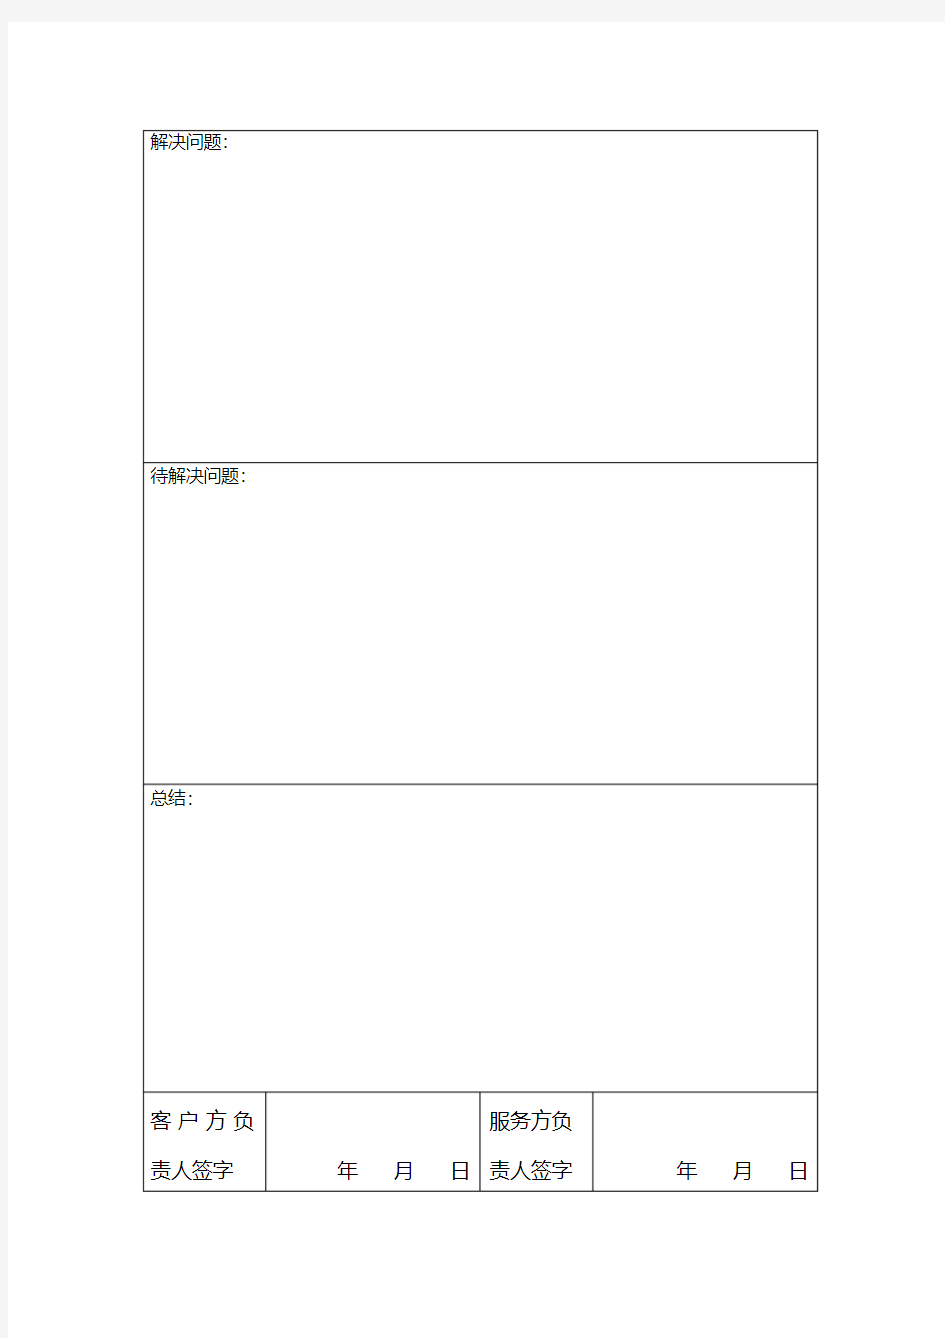 日常运维记录表-精选.pdf